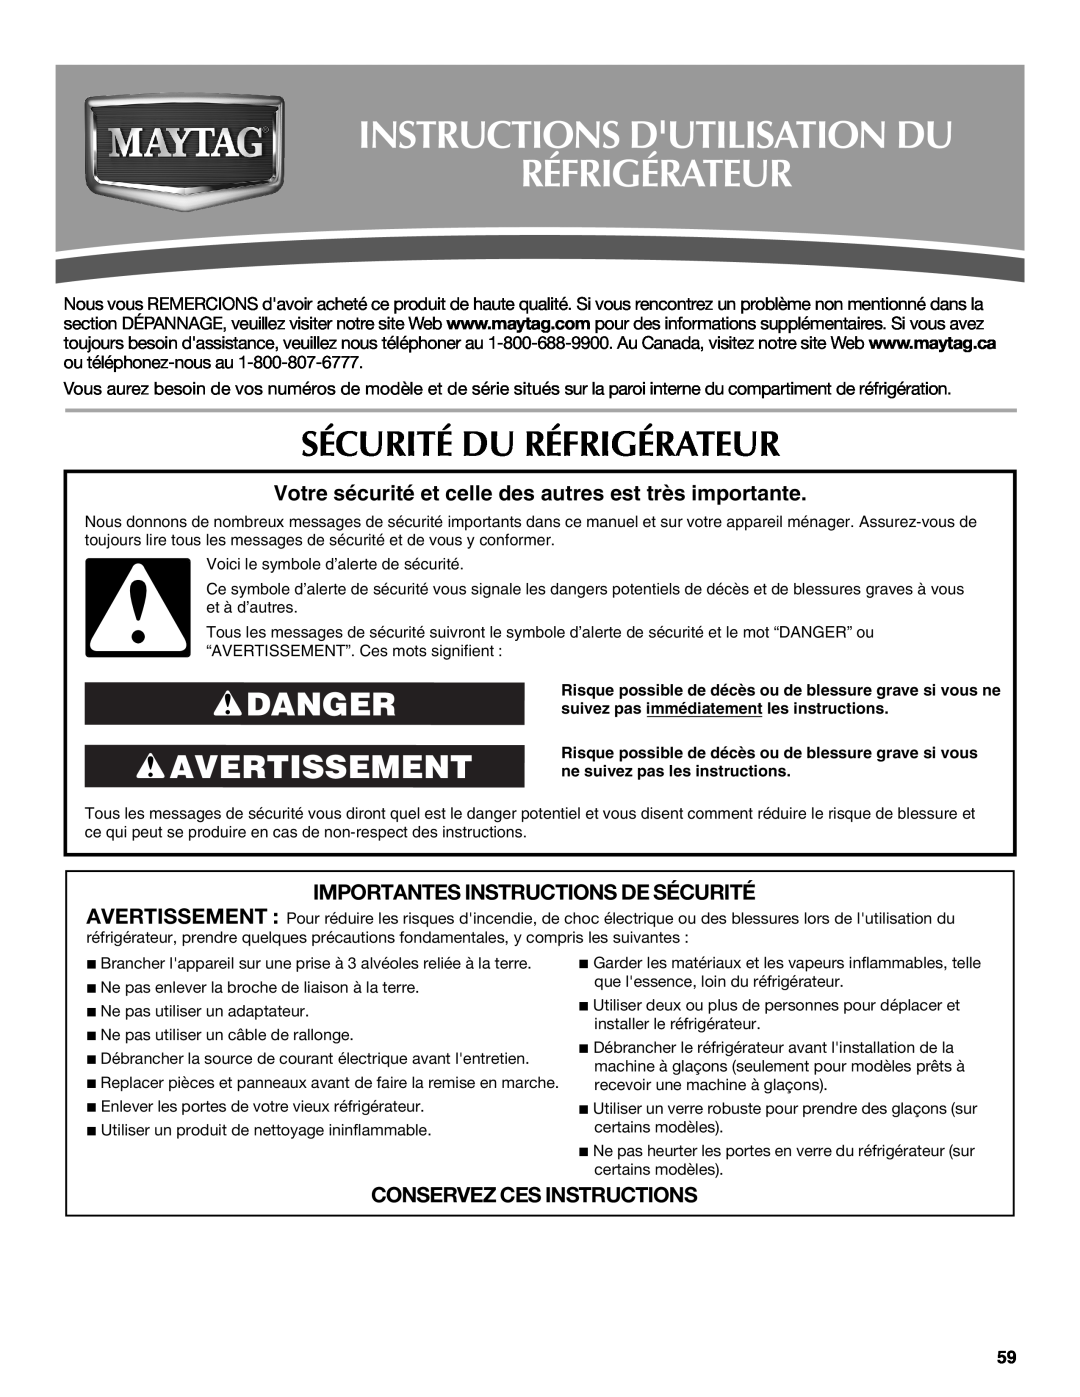 Maytag W10400978A Instructions Dutilisation Du Réfrigérateur, Sécurité Du Réfrigérateur, Danger Avertissement 